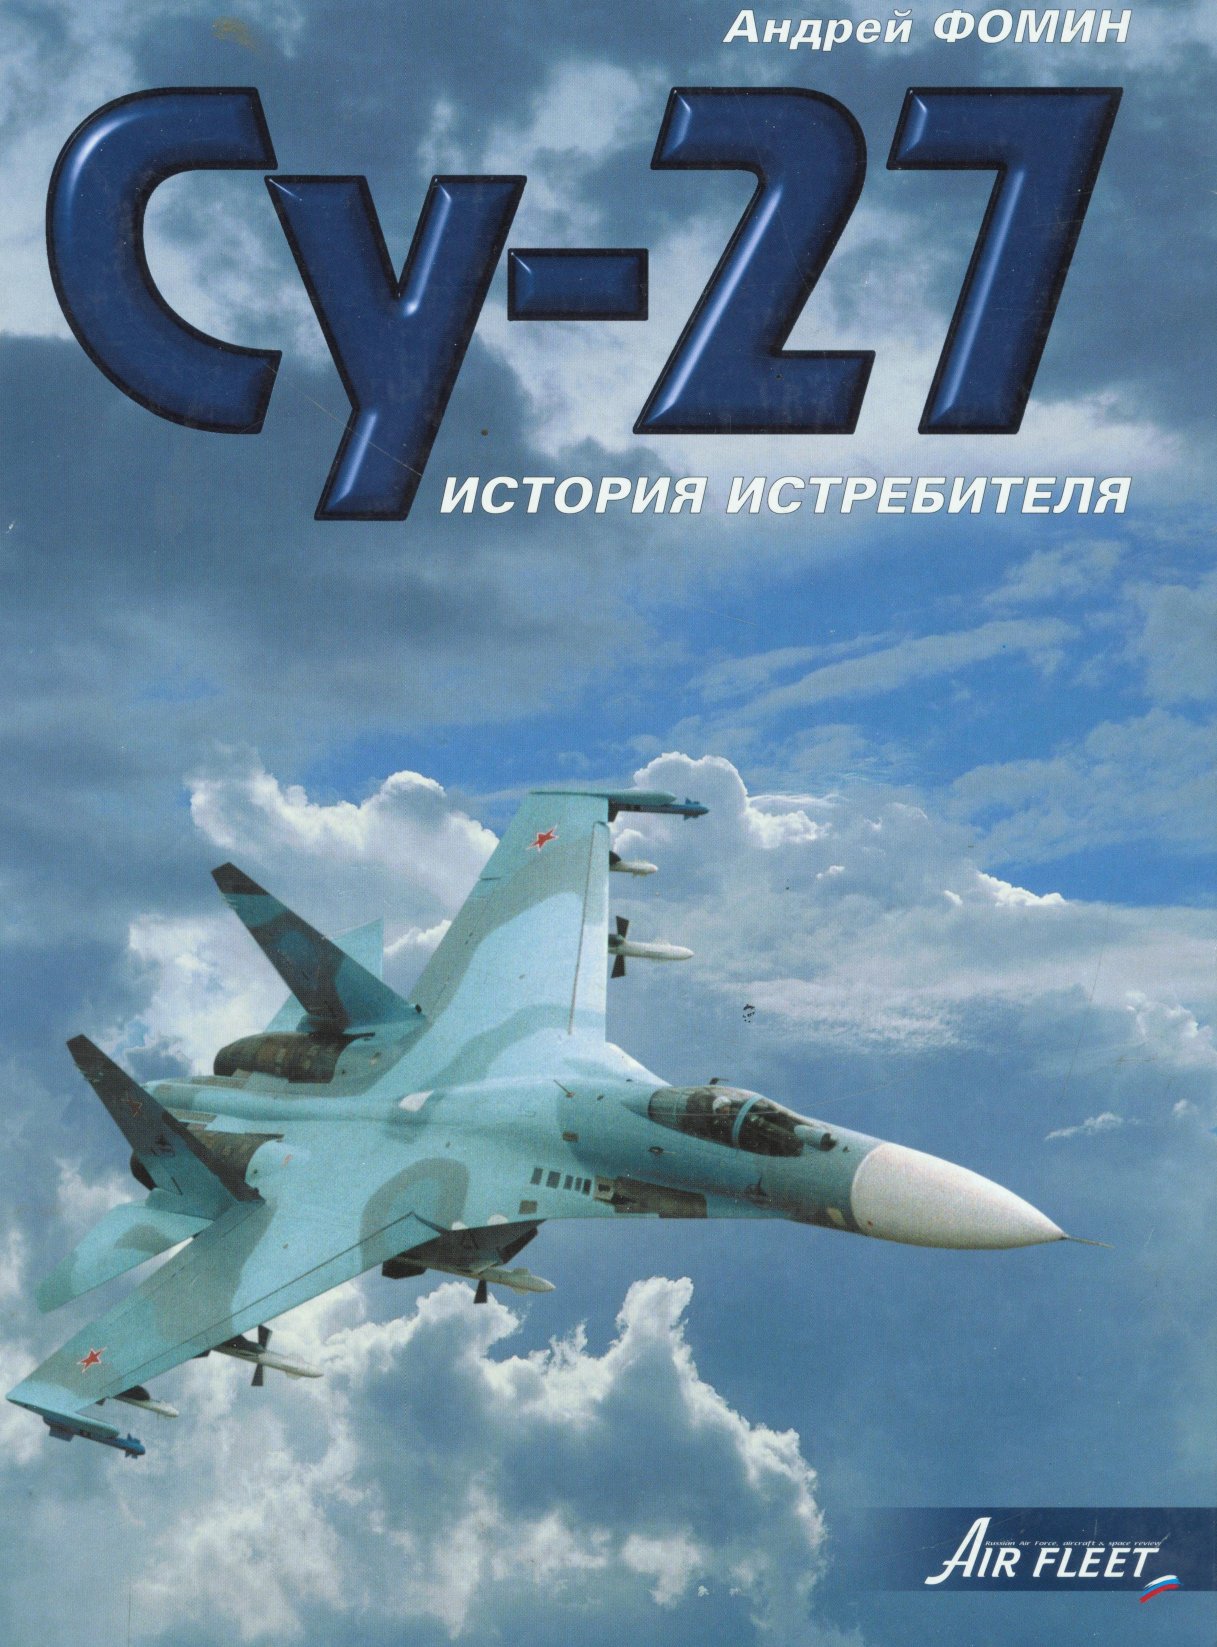 Обложка книги Су - 27. История истребителя (Андрей Фомин)